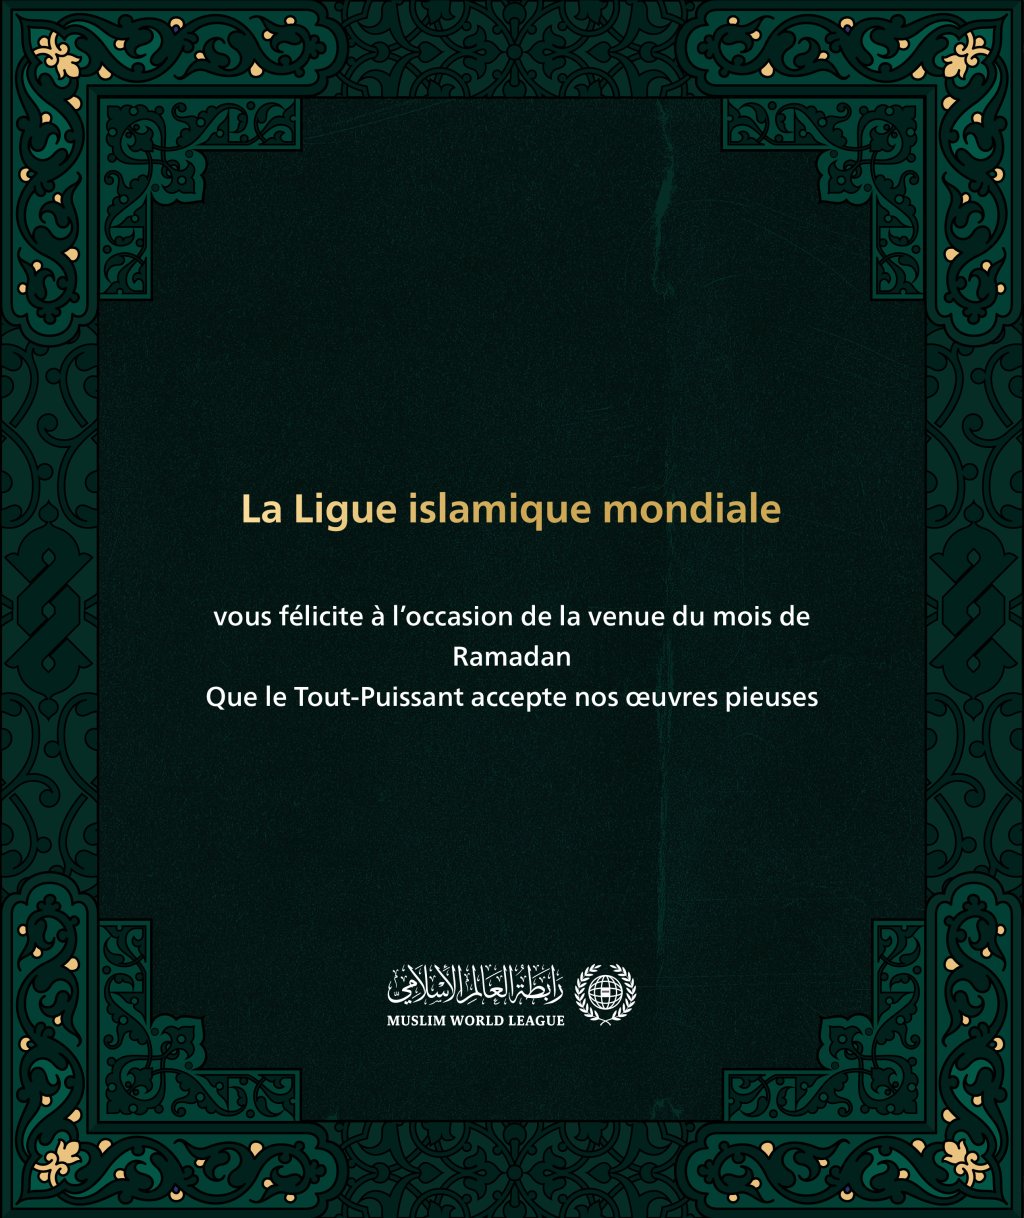 La Ligueislamiquemondiale vous félicite à l’occasion de la venue du mois de Ramadan, que le Tout-Puissant accepte nos œuvres pieuses.